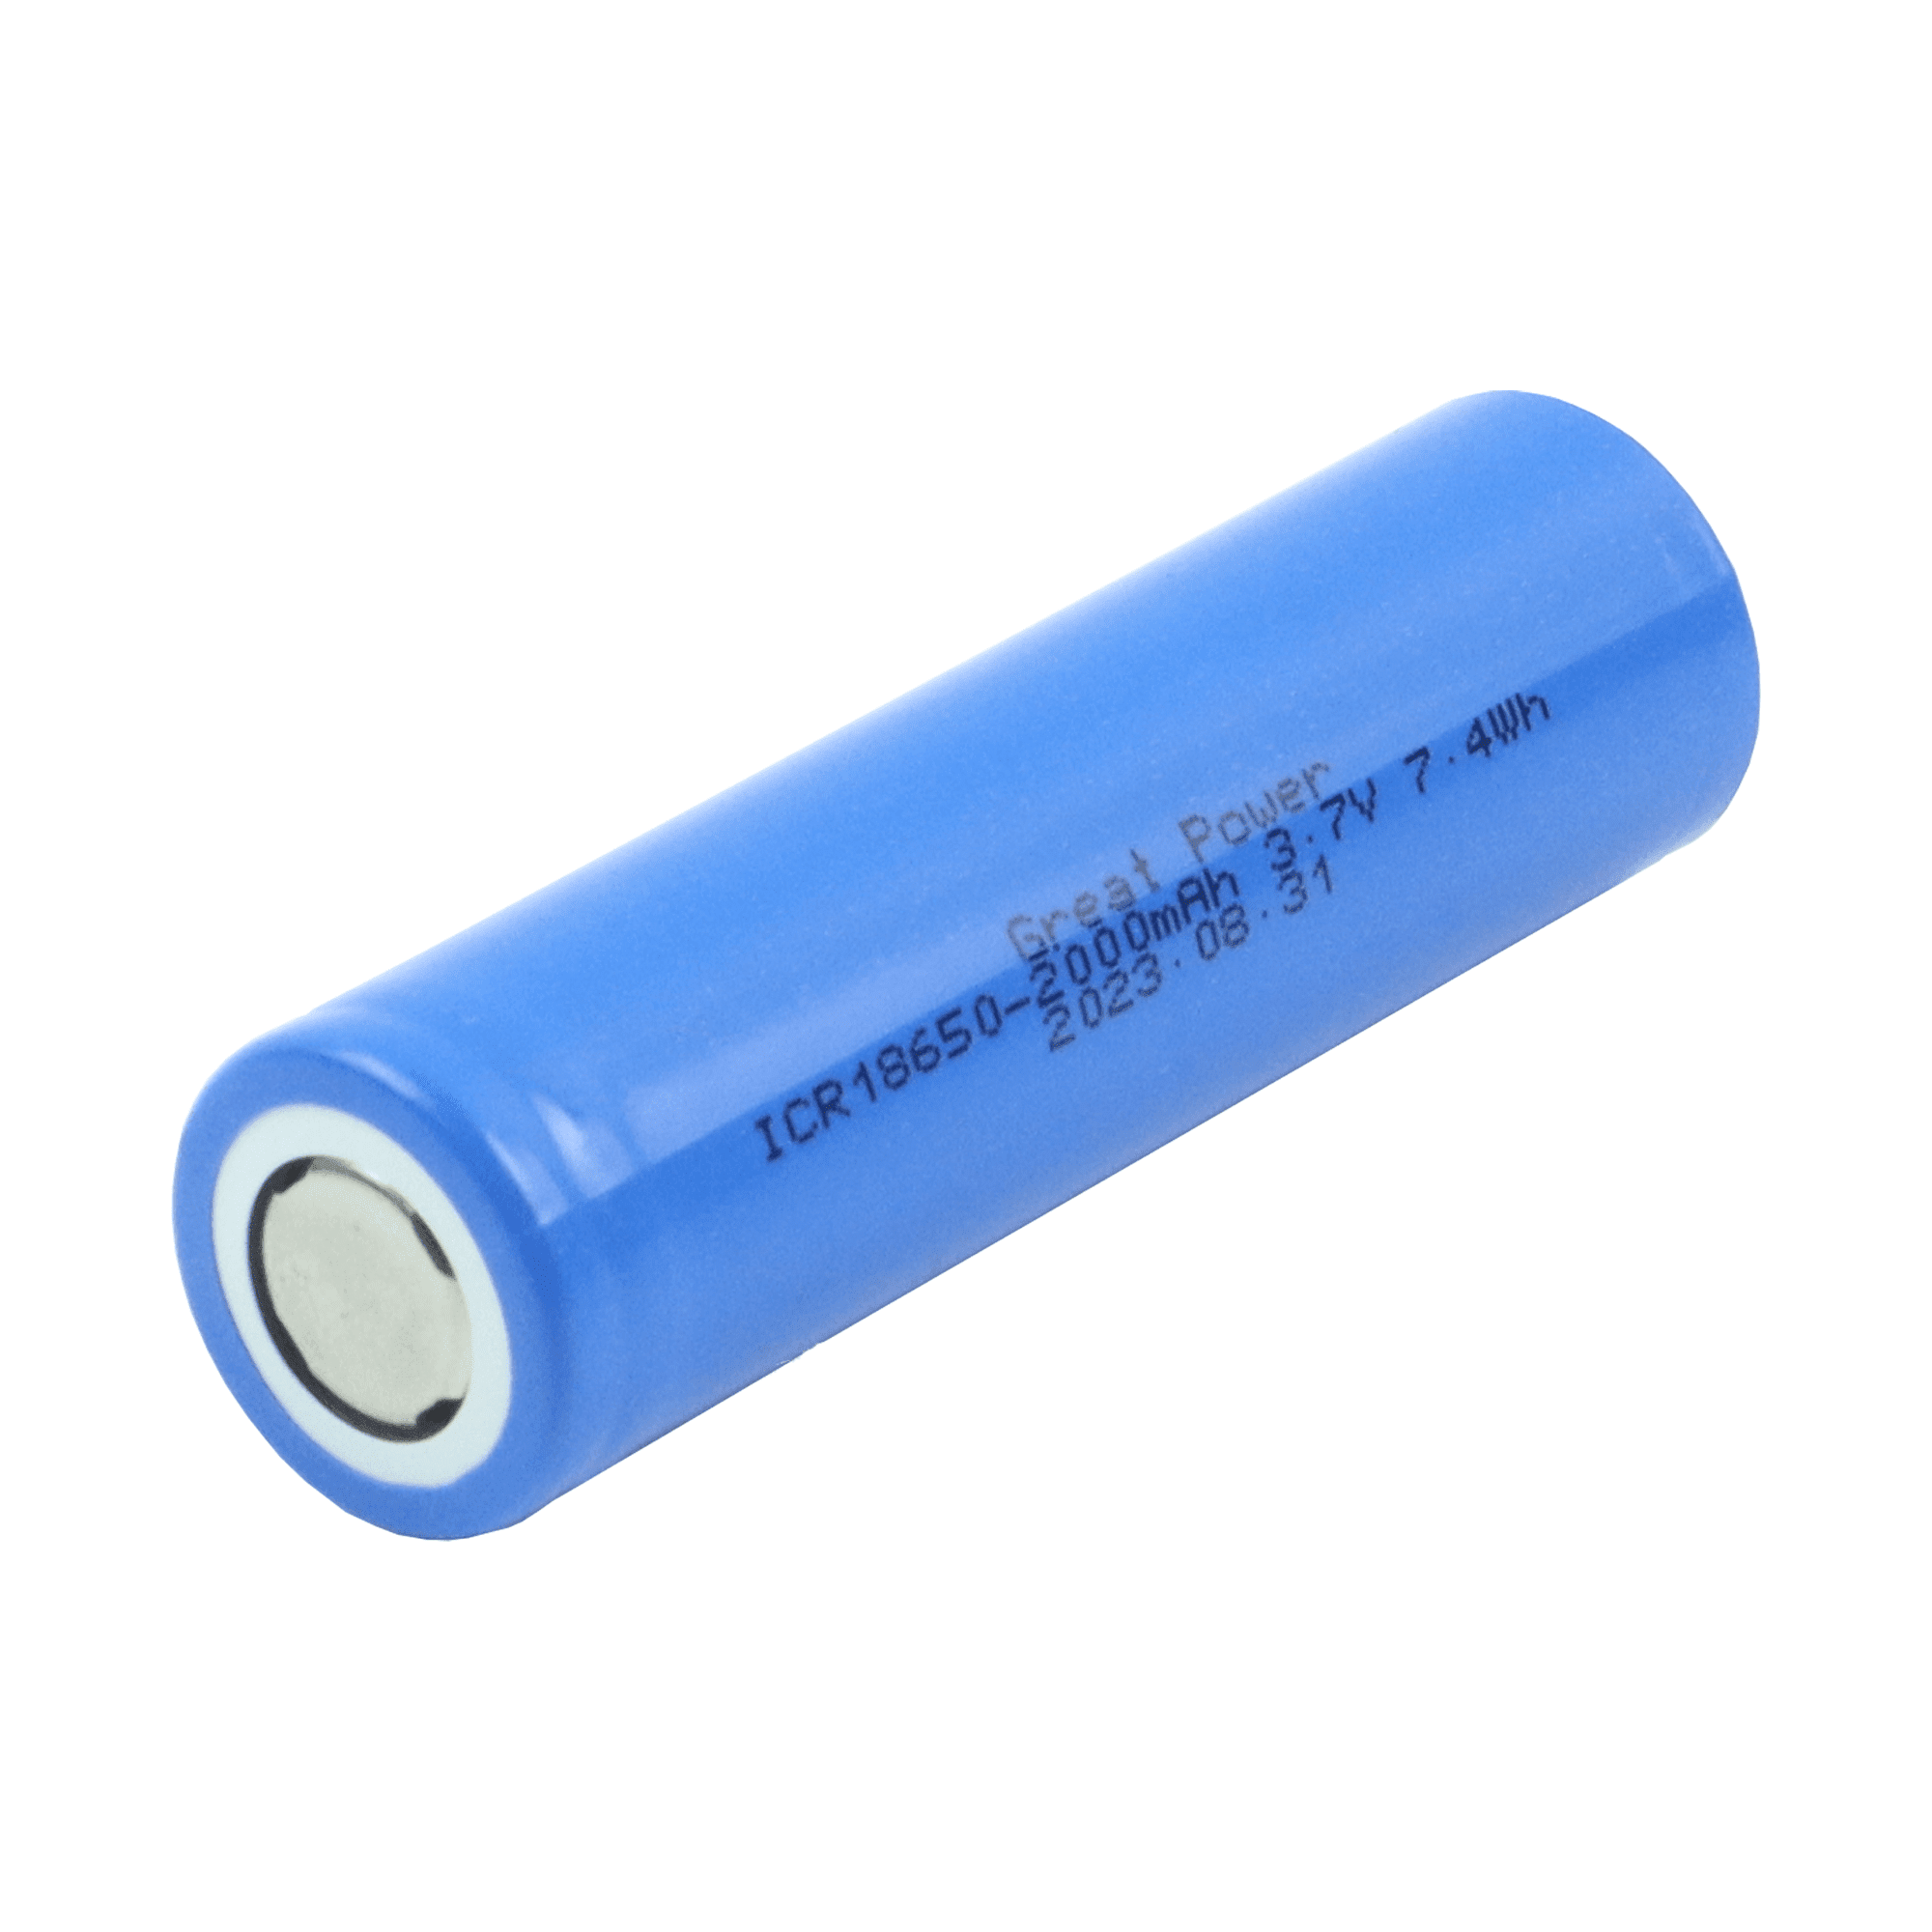 Li-ion Battery 3.7V/2000mAh – Flat - Gamasonic USA